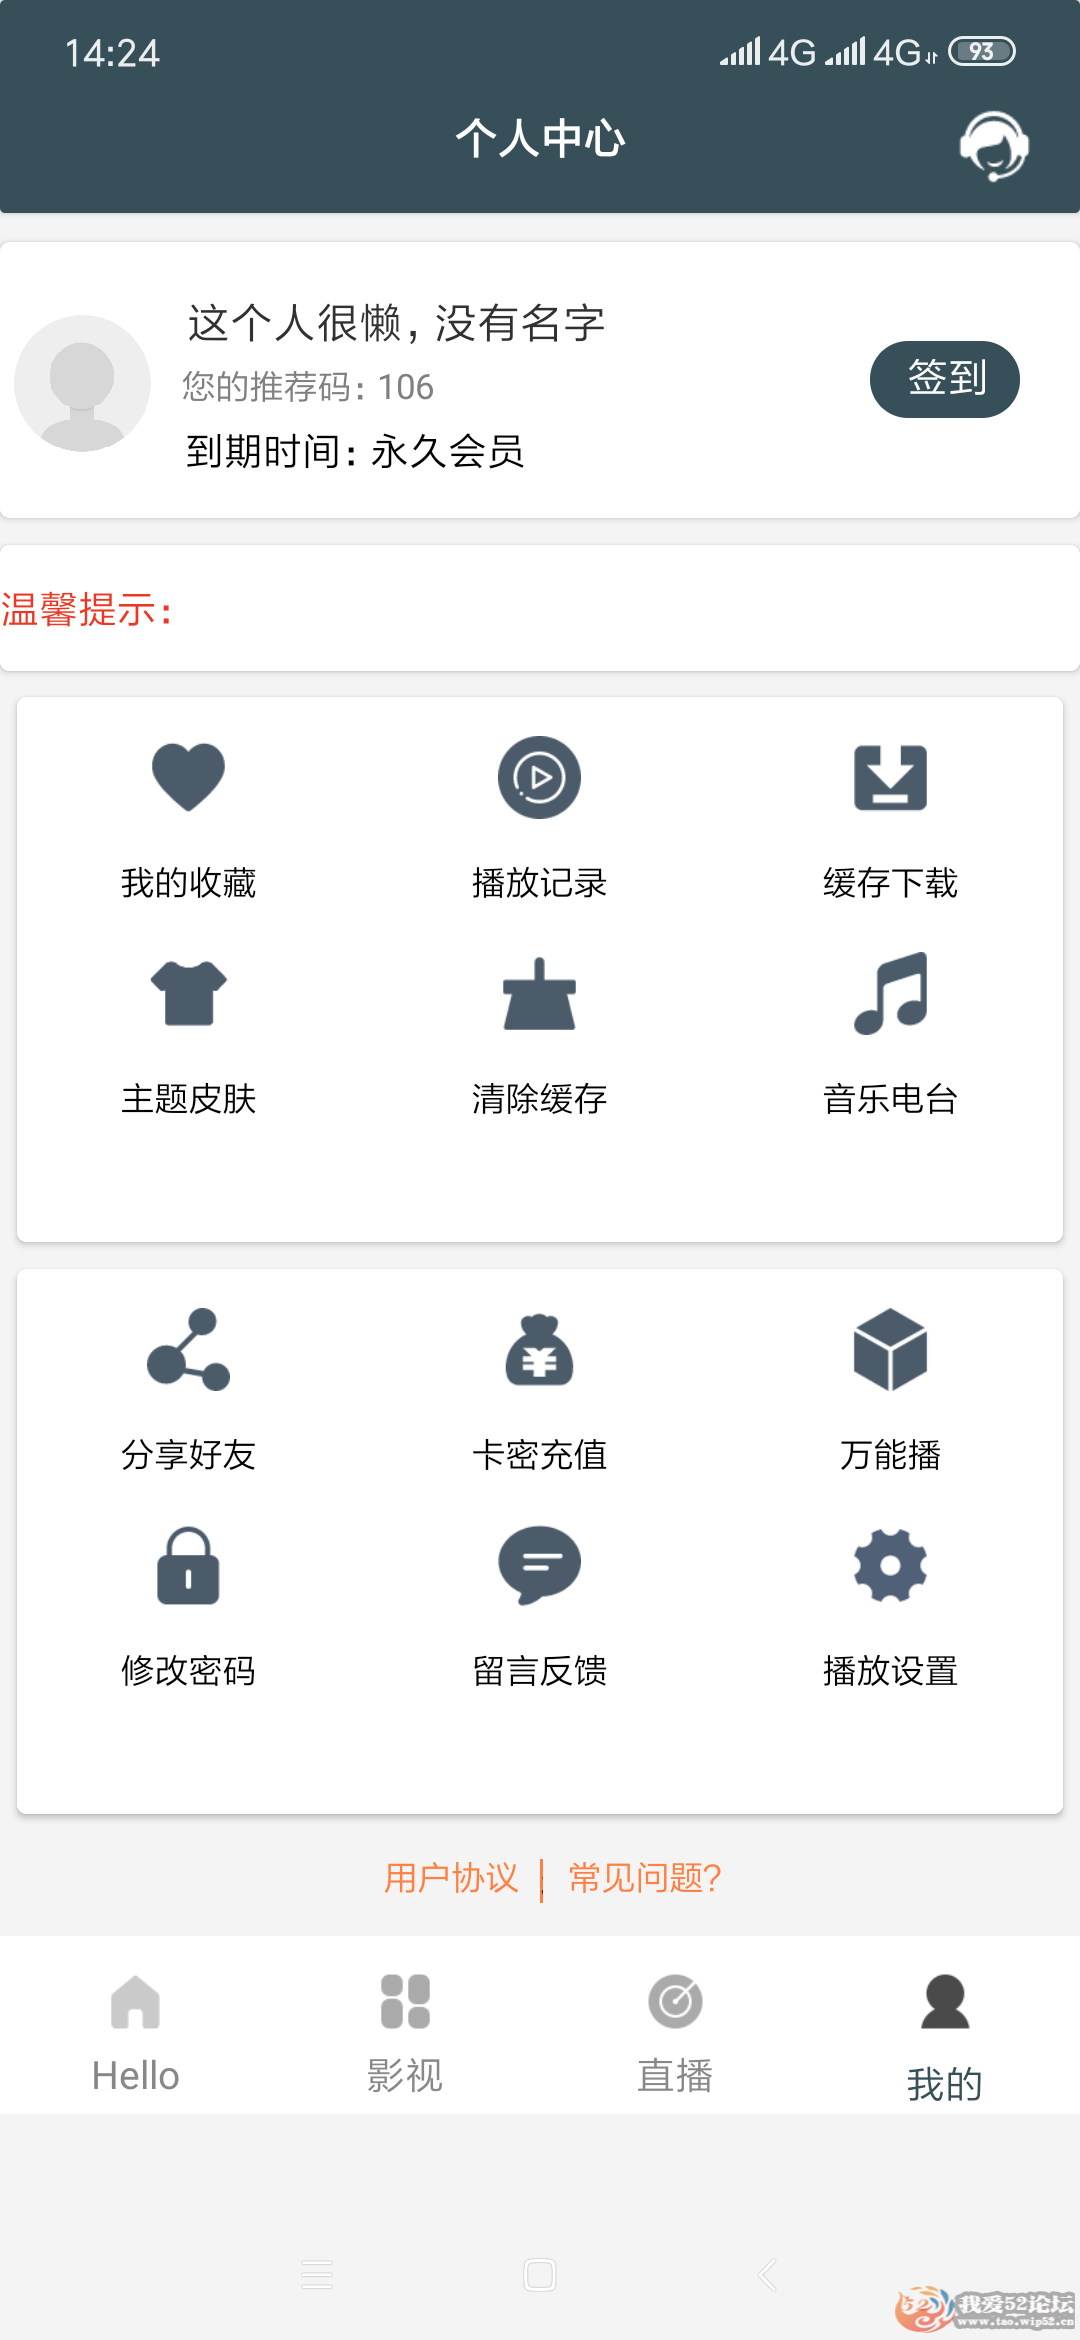 Screenshot_2019-05-30-14-24-03-151_com.lexiang1663058123.png